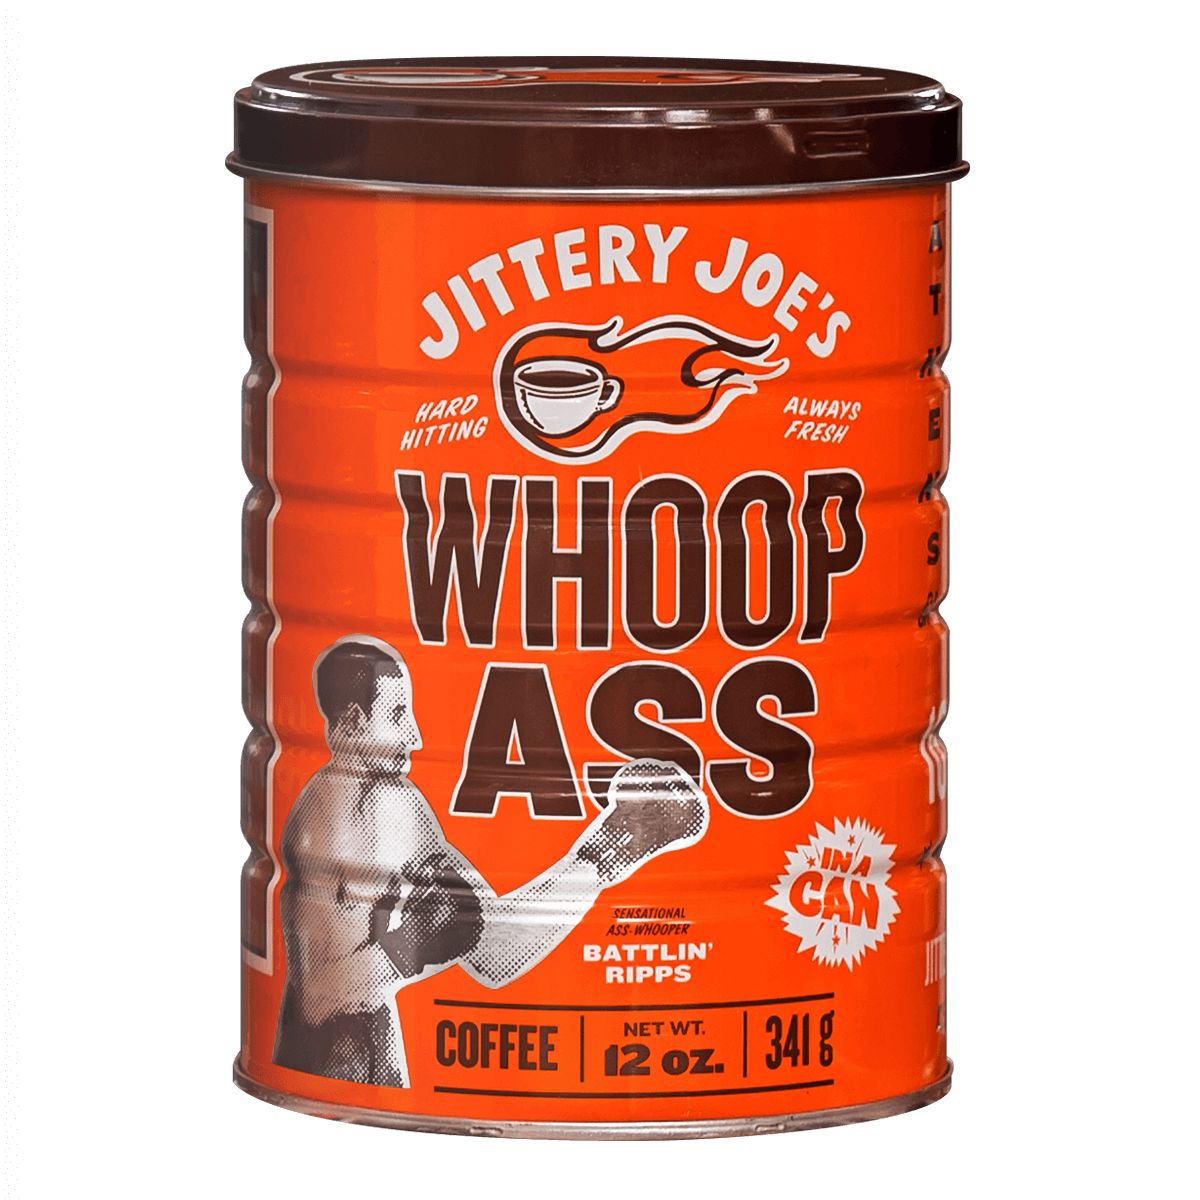 Jittery Joes Whoop Ass Coffee!